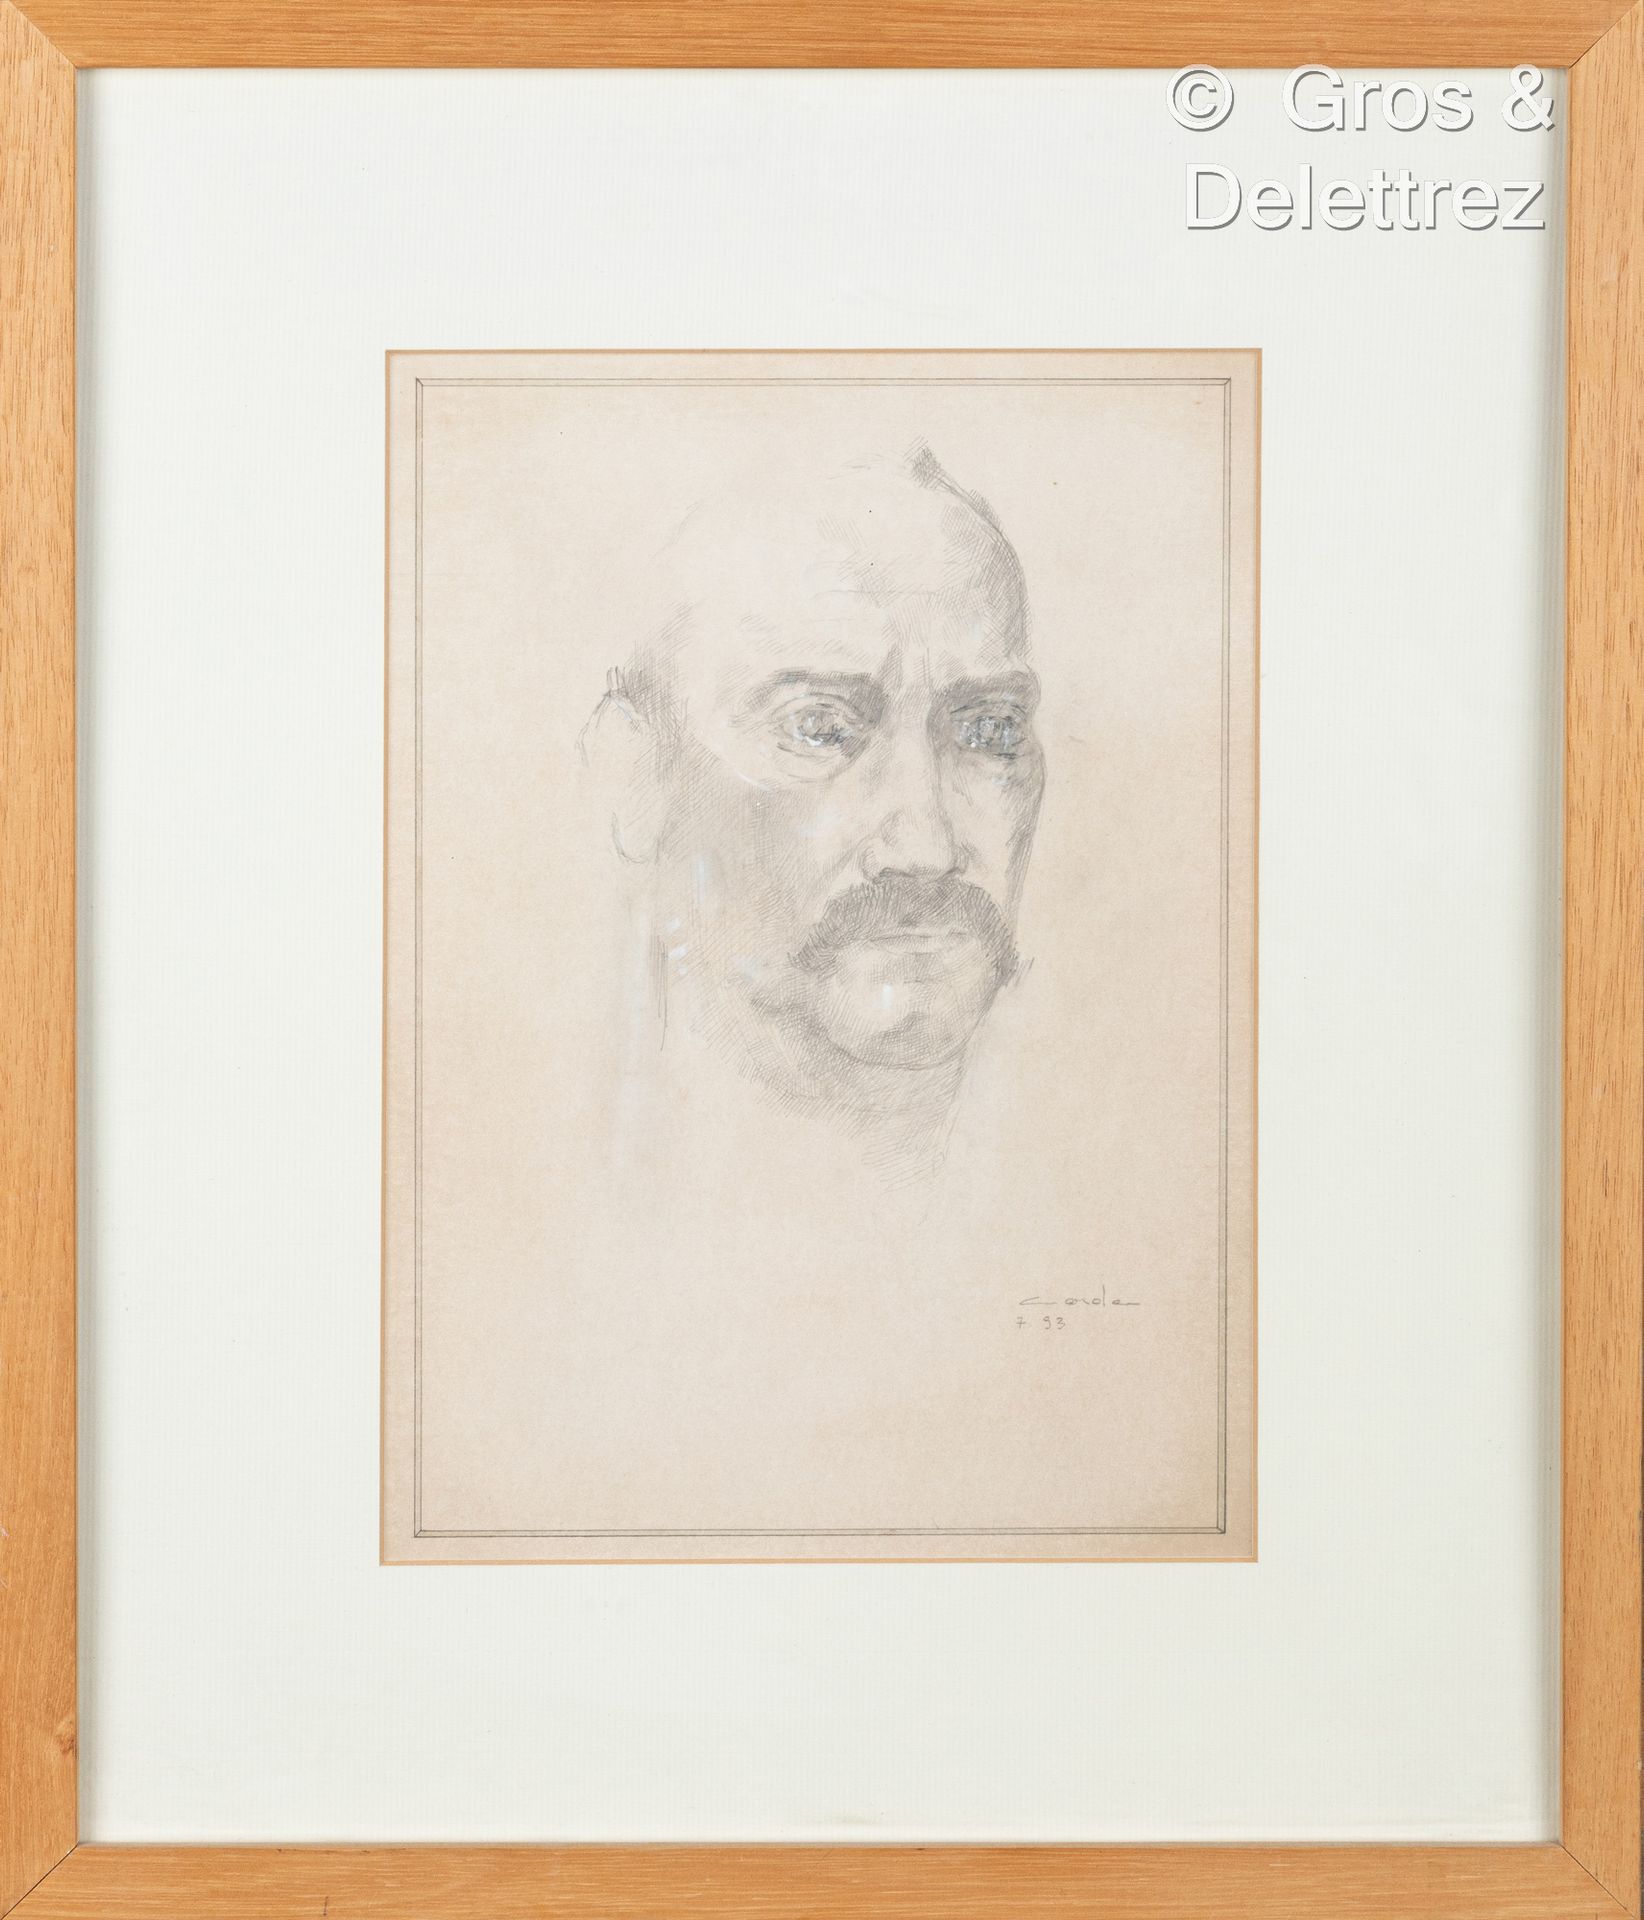 Null (E) 毛罗-科达(生于1960年)

有小胡子的人的肖像

纸上石墨和粉笔高光，右下方有签名和日期93

31 x 22 cm 正在观看